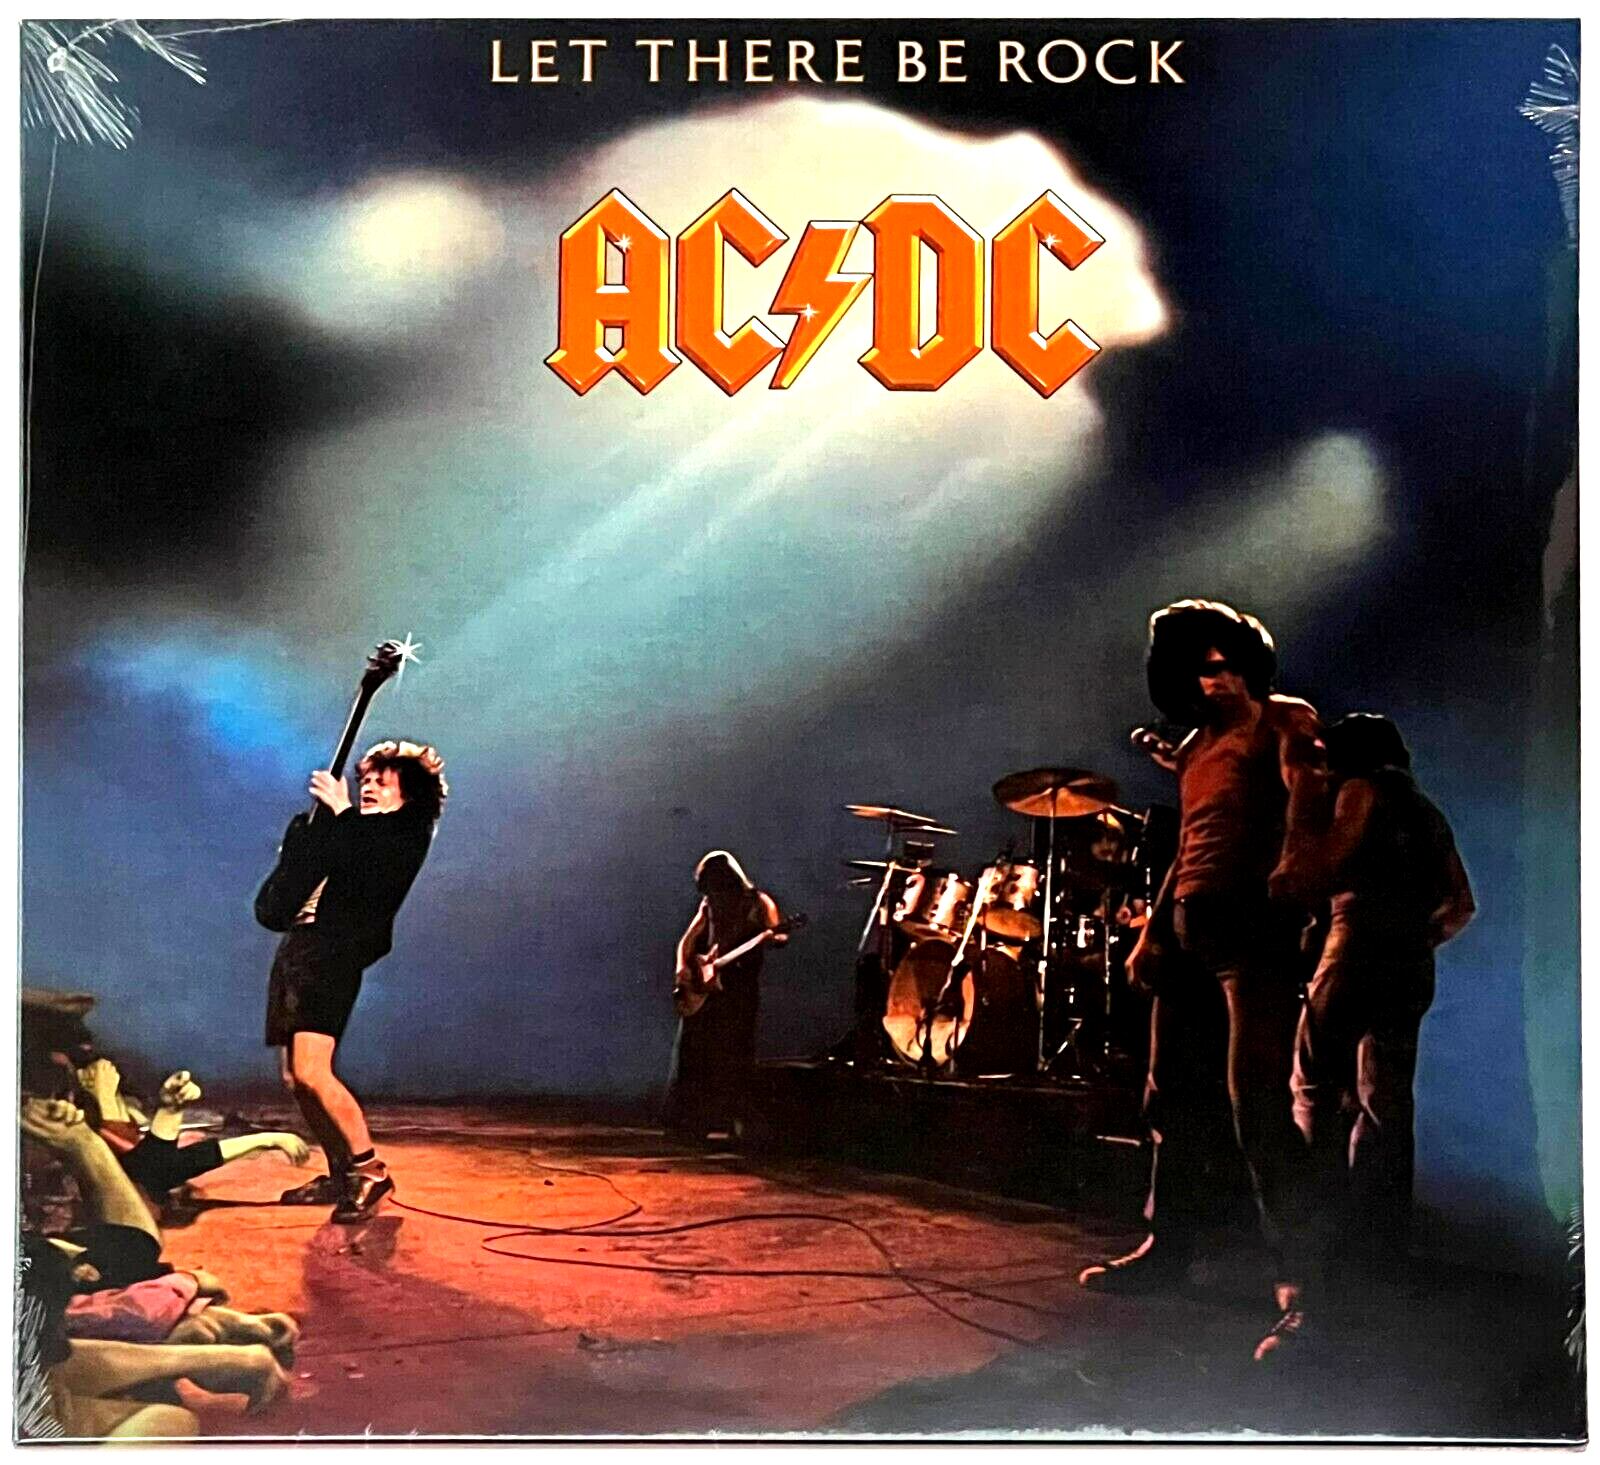 Portada del disco 'Let There Be Rock', el primero en el que aparece el logotipo de AC/DC diseñado por Gerard Huerta. Hoy se sigue utilizando. 